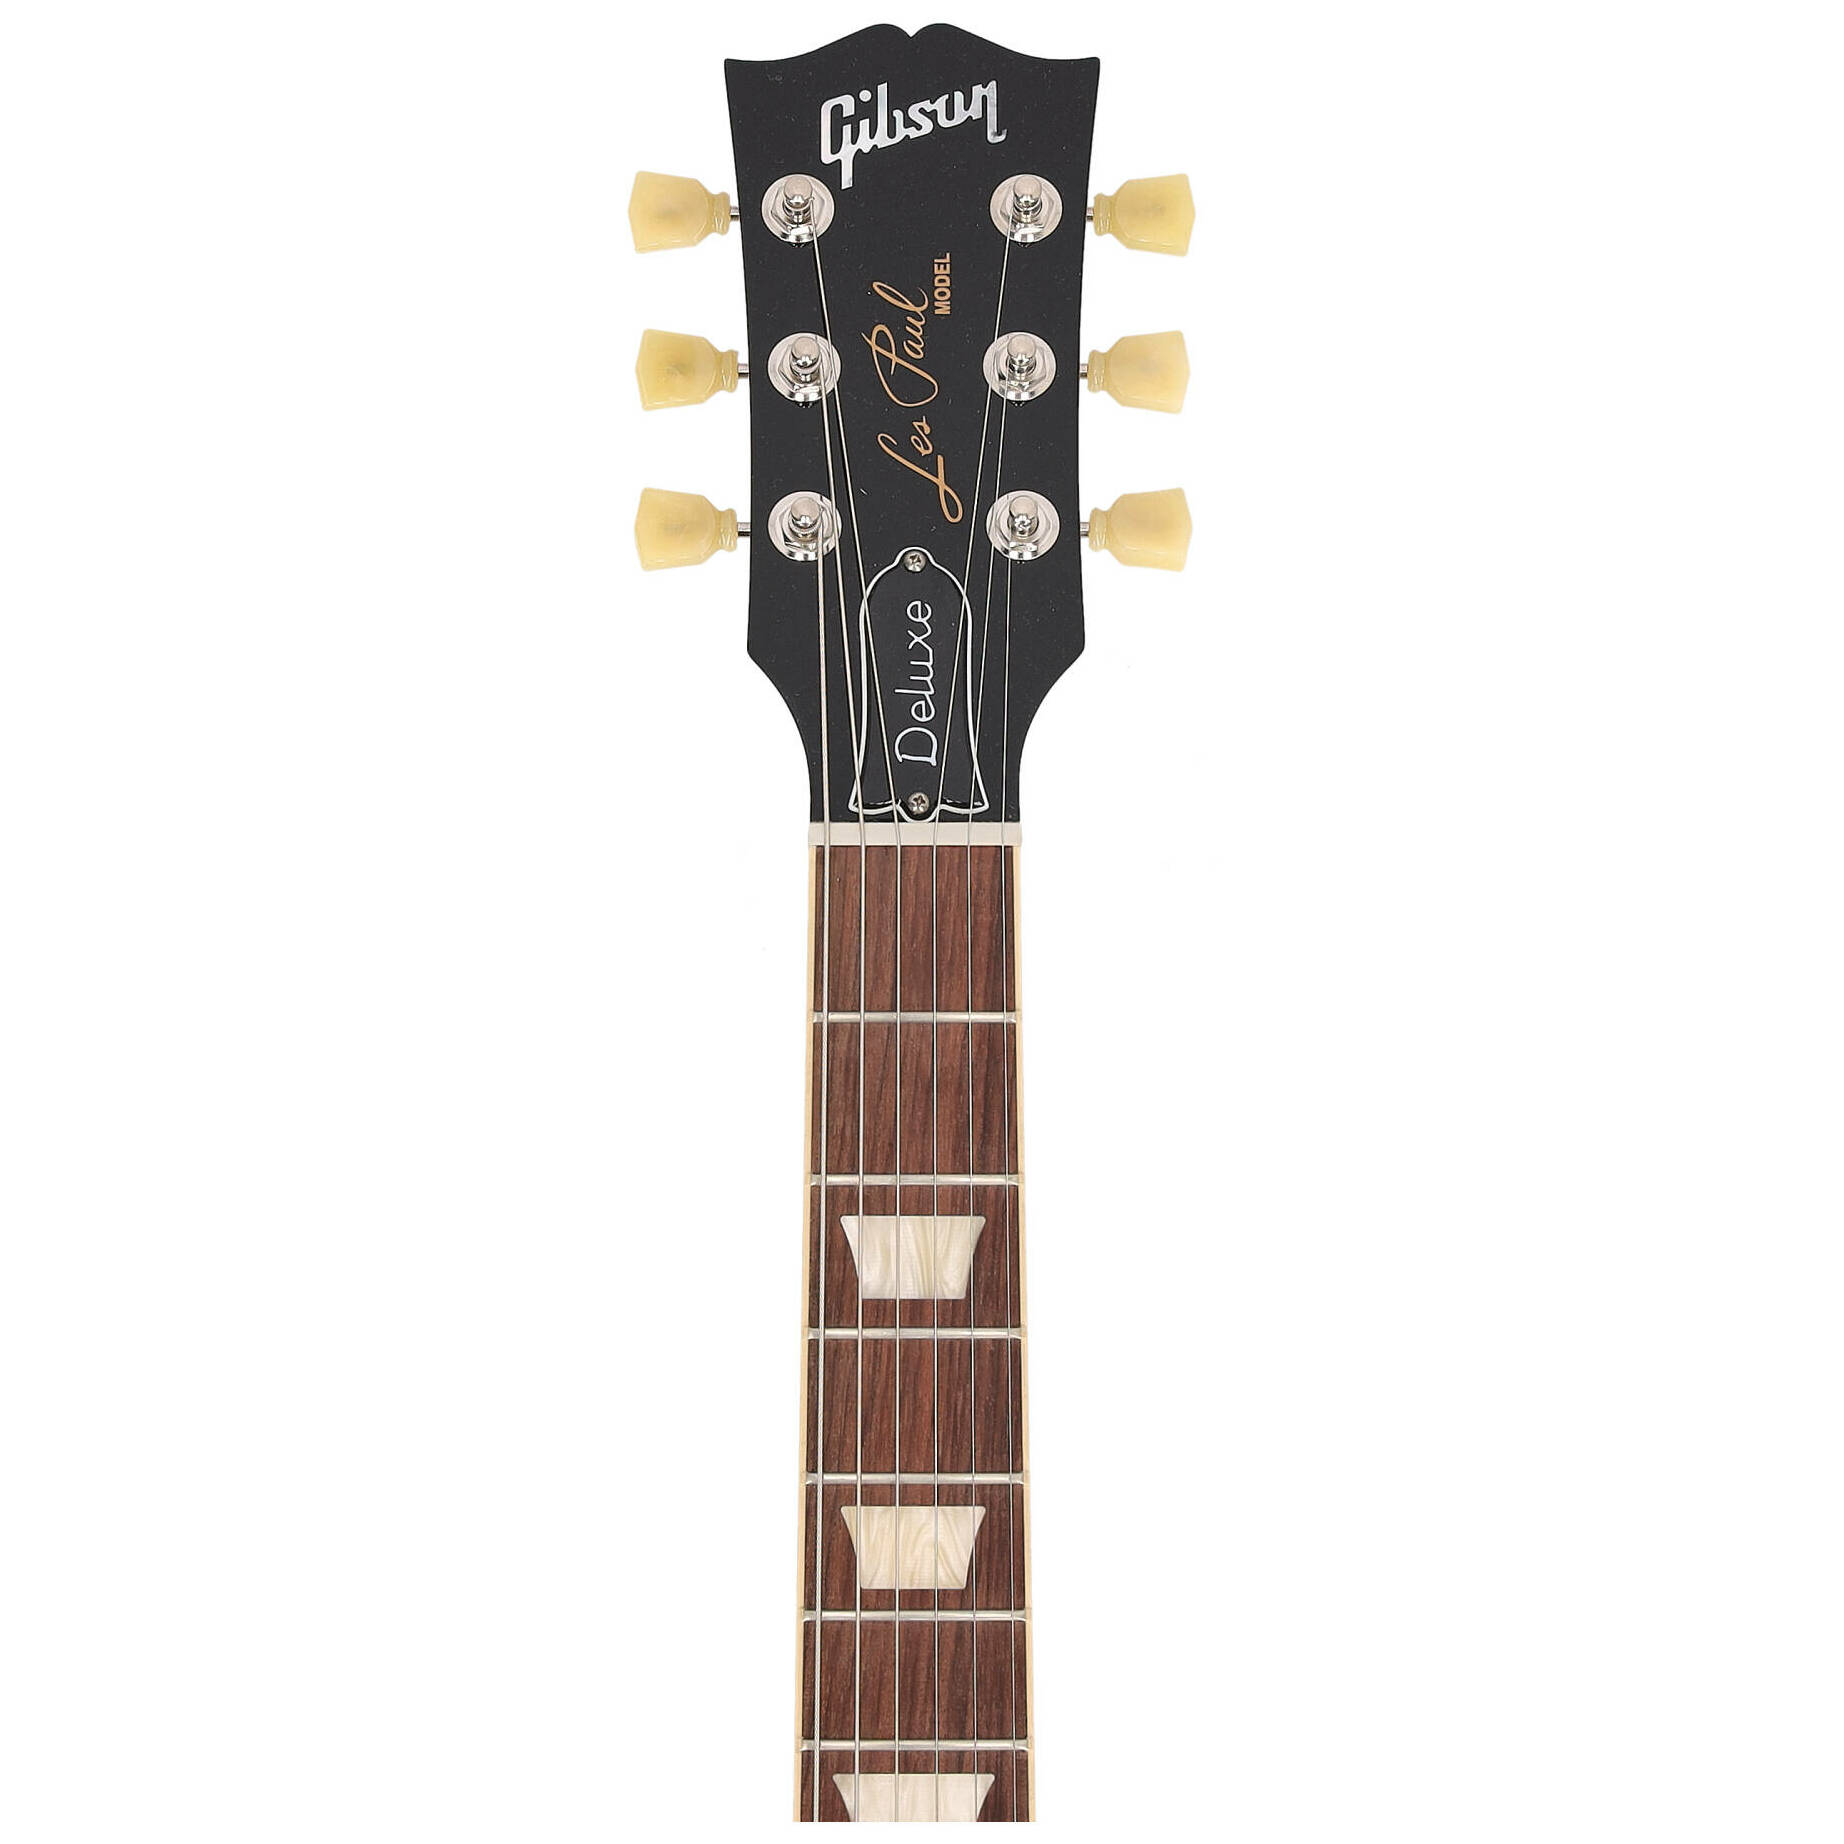 Gibson Les Paul Deluxe 70s Cherry Sunburst 5